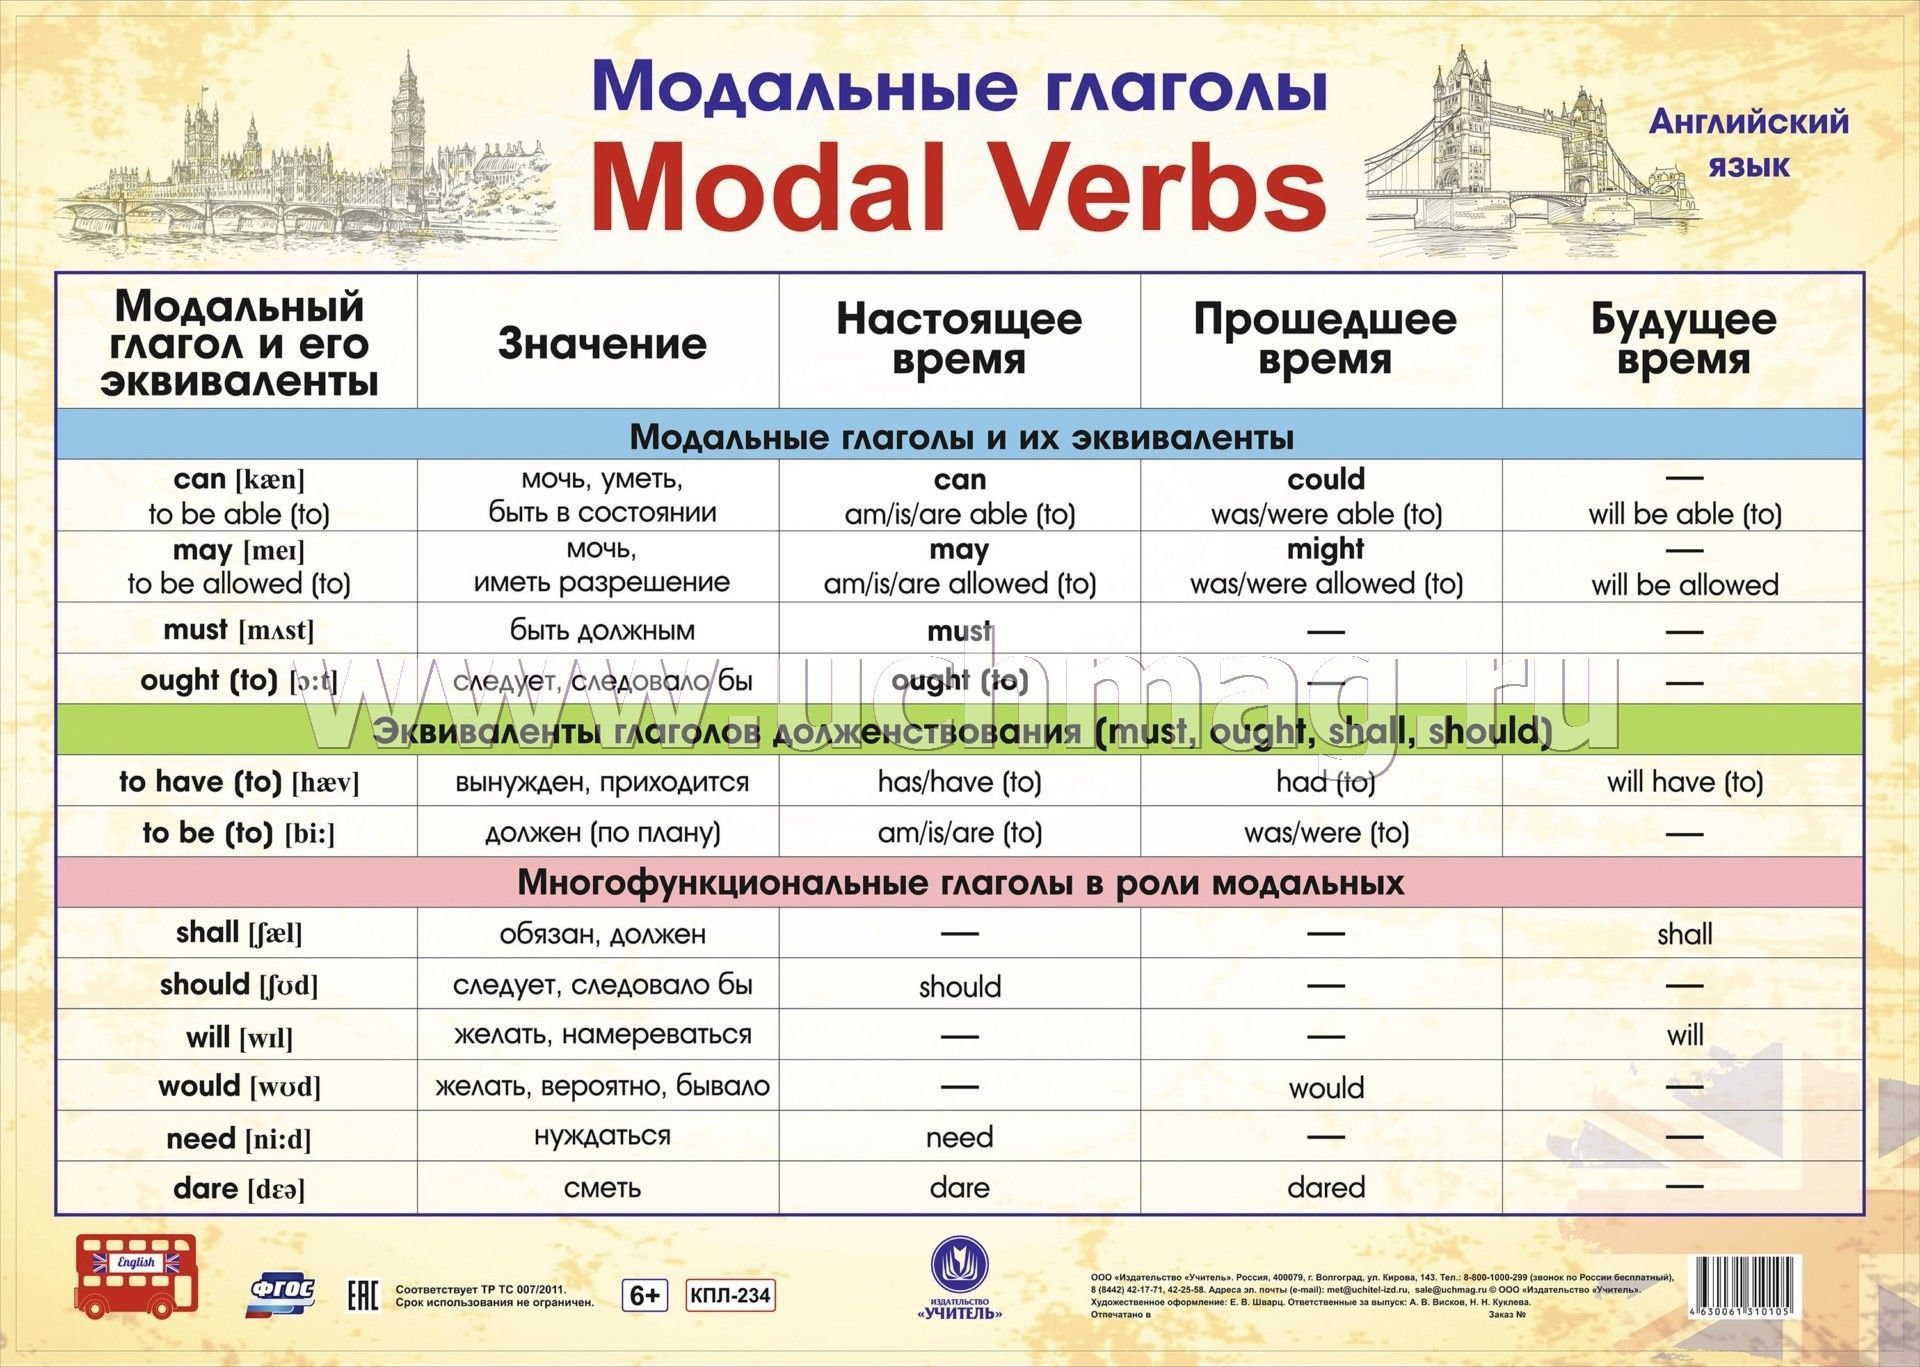 Форма глагола can в английском. Модальные глаголы в английском языке таблица. Модальные глаголы англ яз таблица. Модальные гляголы в анг. Можальные гдаголы втанглийсуом языке.